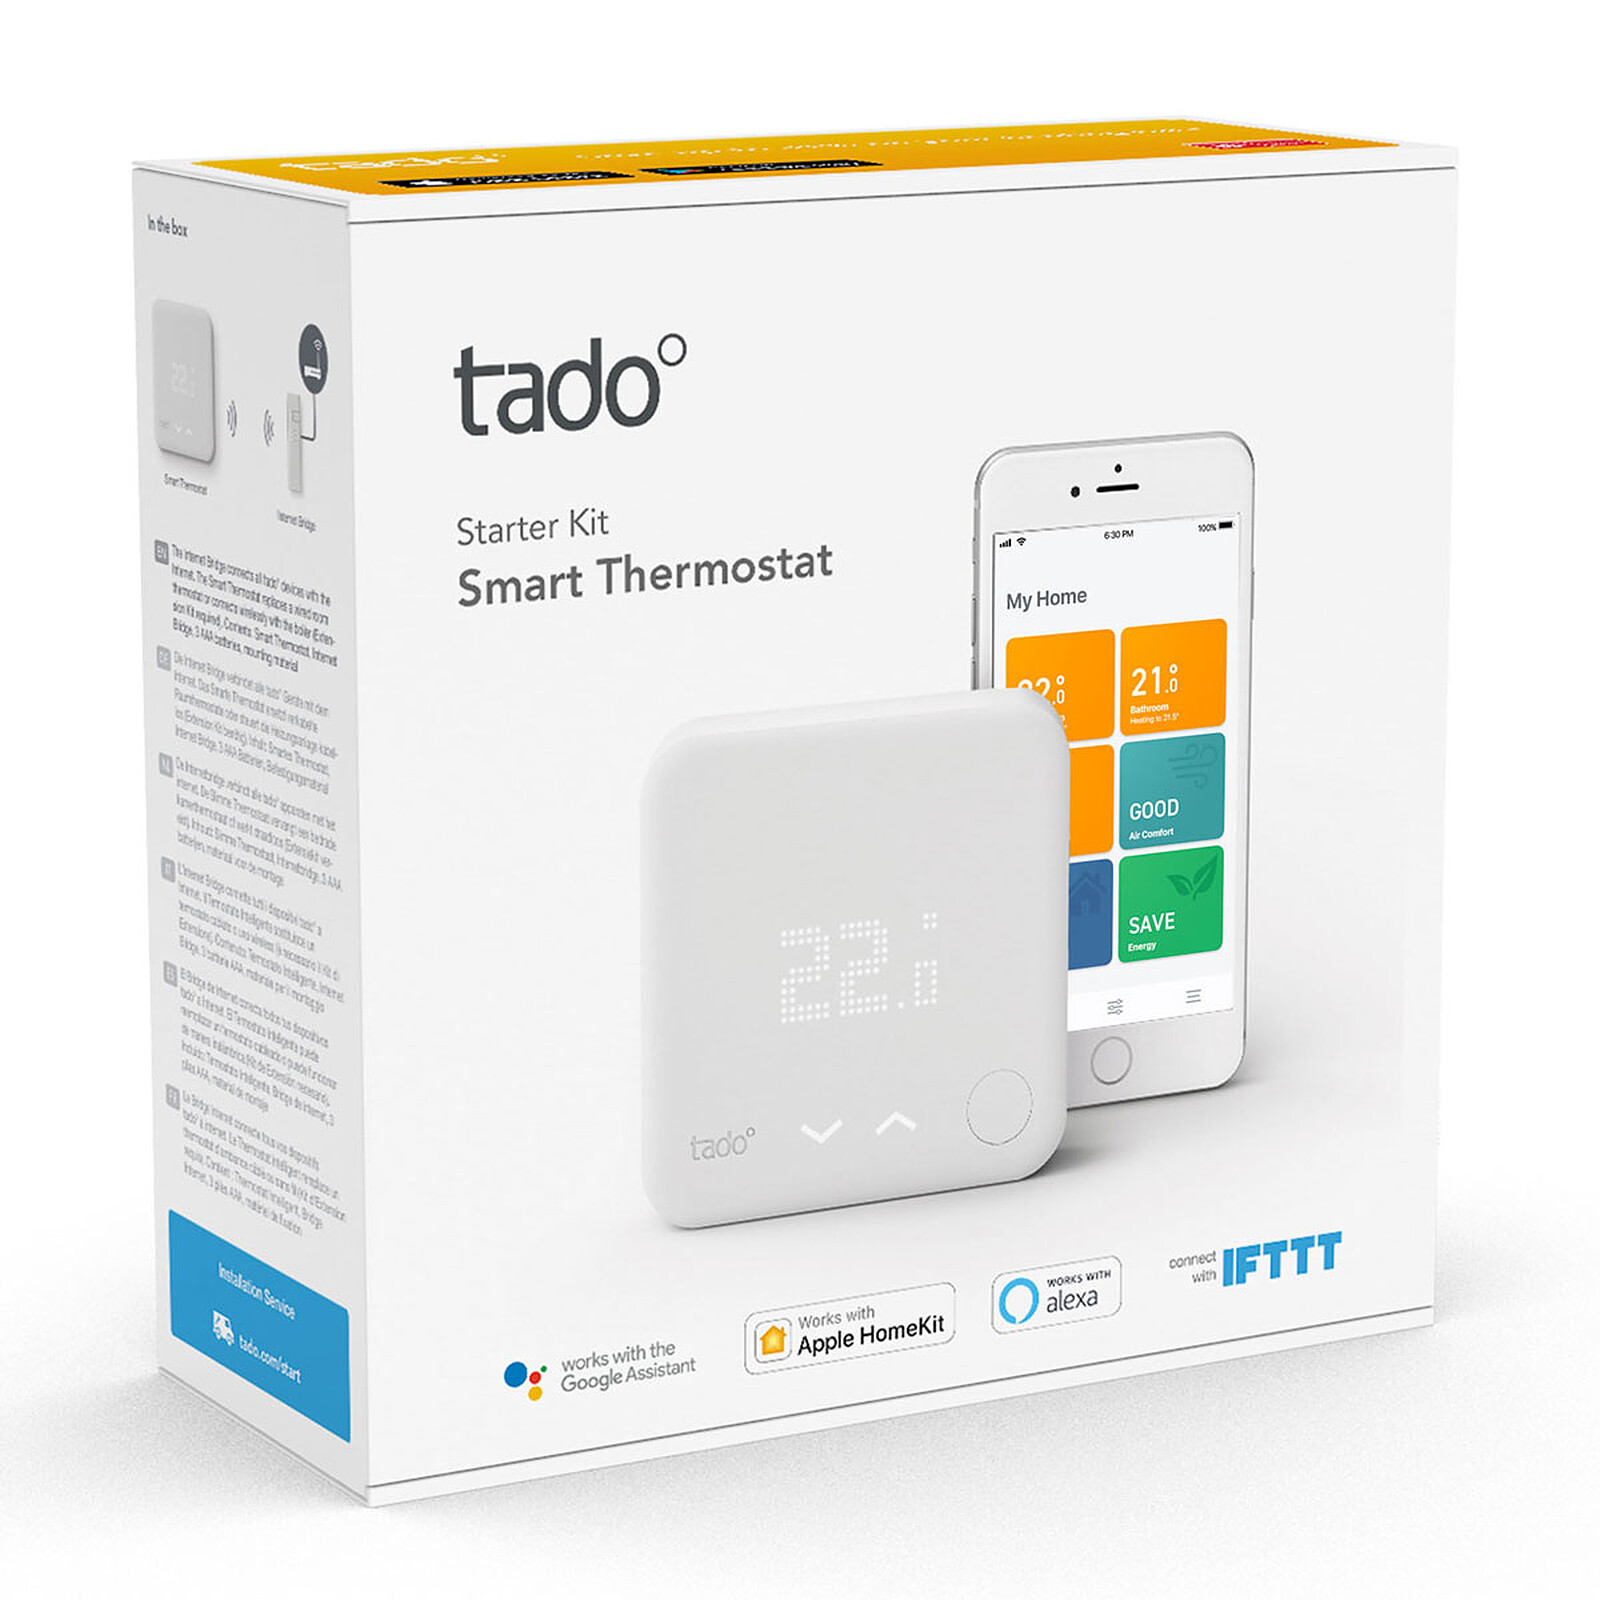 Tado Termostato inteligente Kit de arranque v3+ - Termostato Inteligente -  LDLC